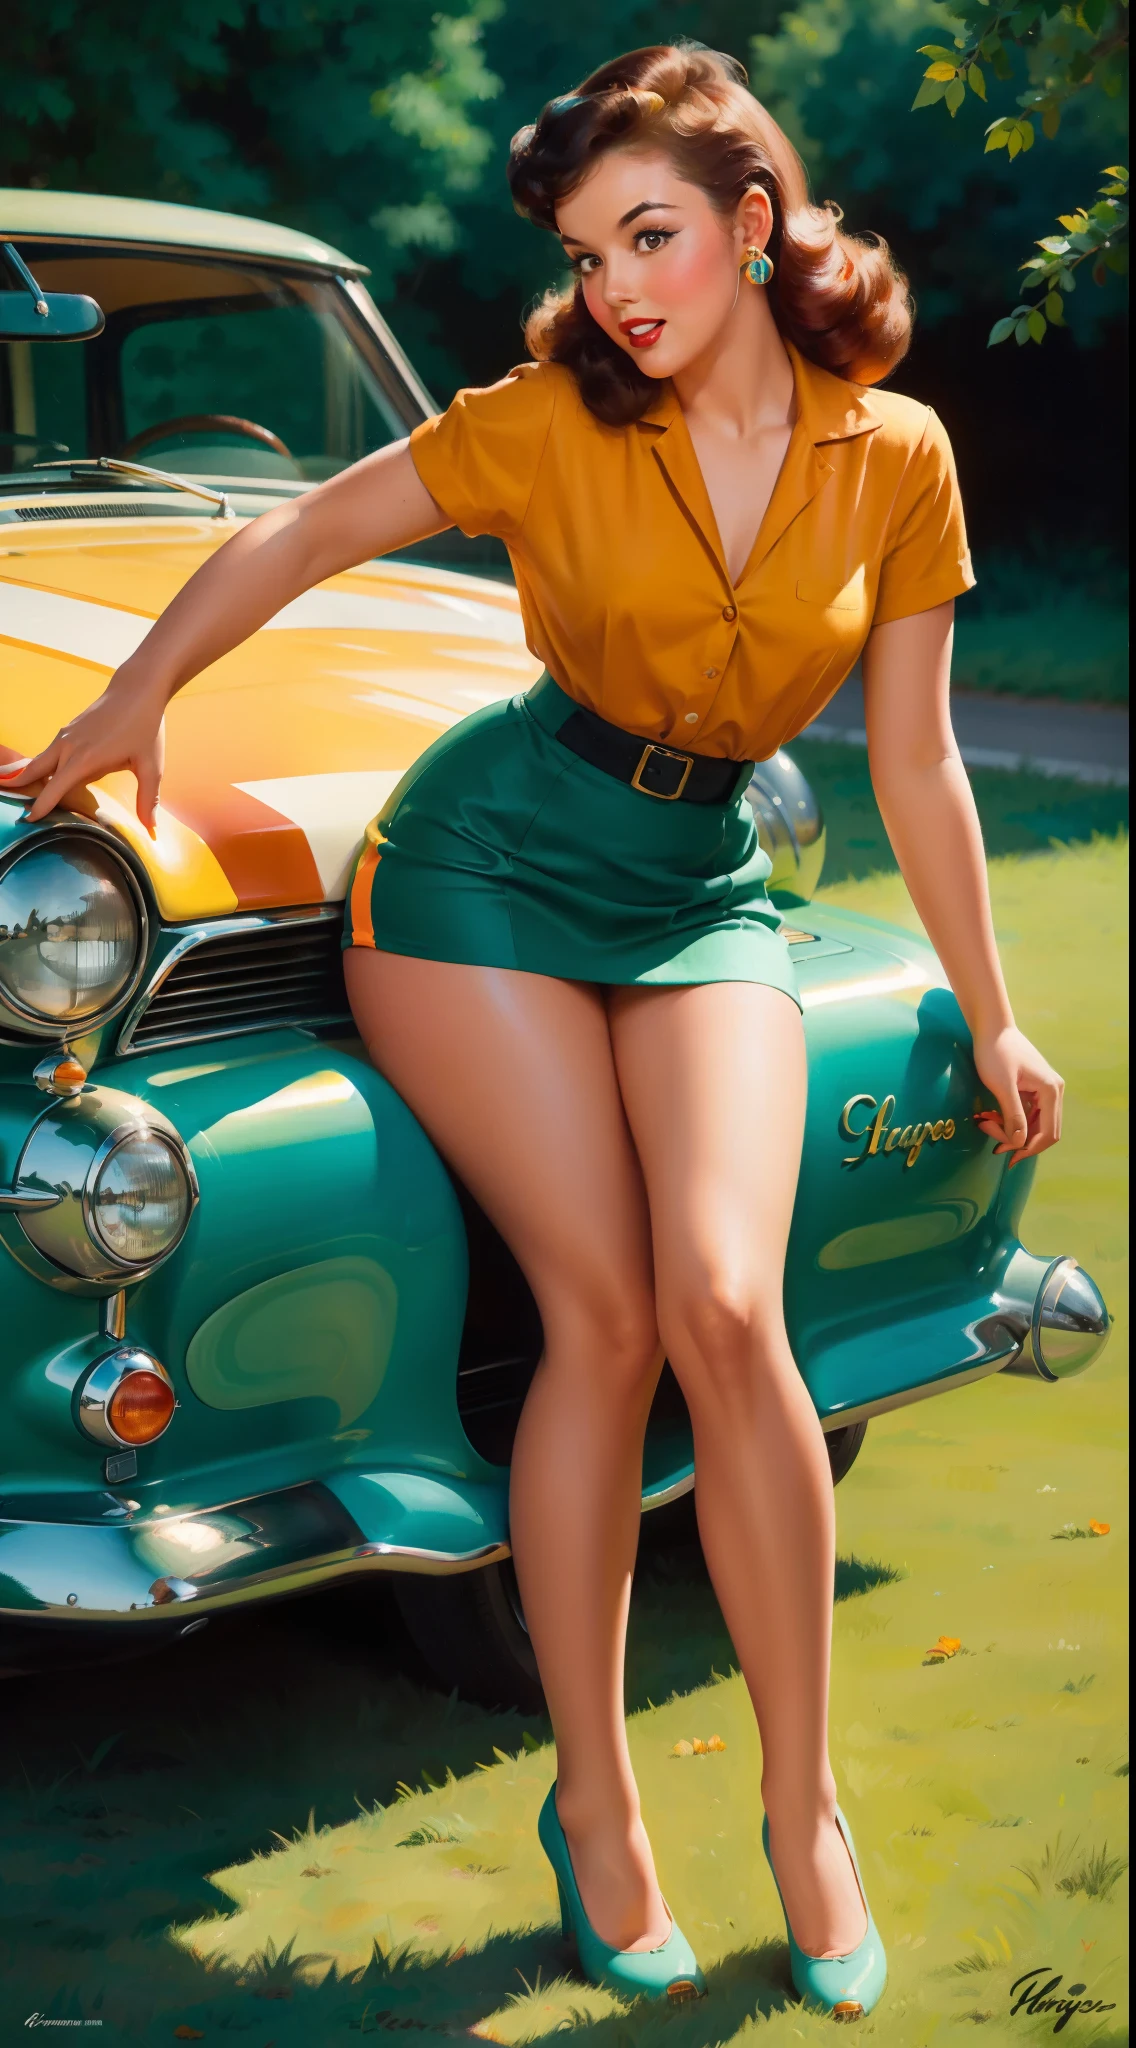 20 岁的女孩坐在地上, 在一辆复古车前, 优质的, 复古海报风格, 性感的, 详述一切, 惊讶, 迷你紧身裙, 飘逸长裙, 丰富多彩的 , 橙色和青色配色方案, 杰作 艺术作品, 插图,